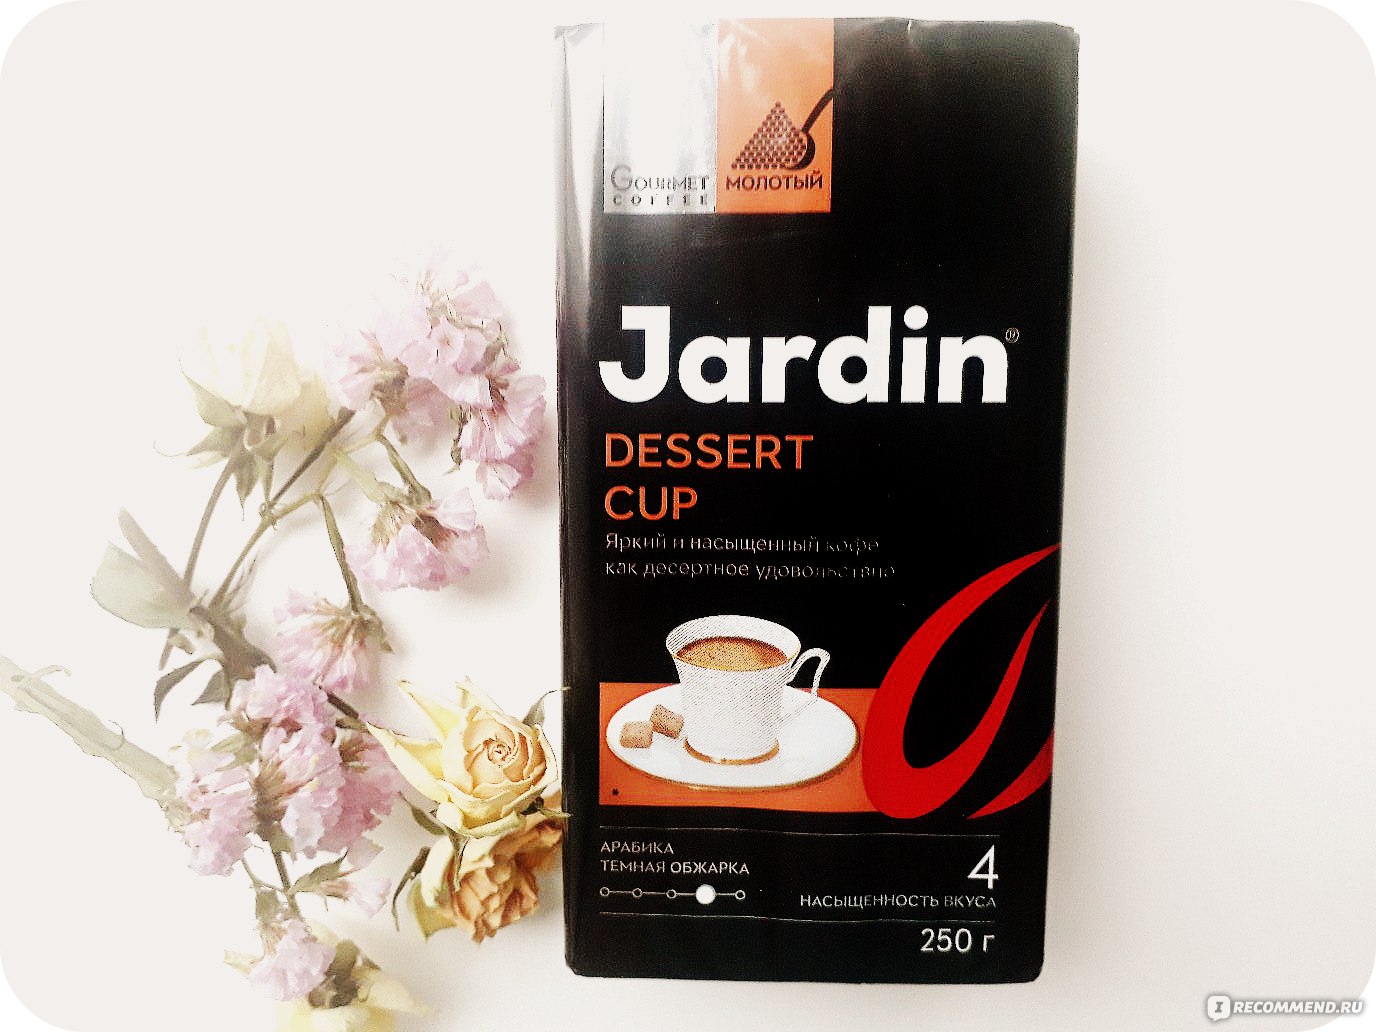 Dessert cup. Жардин Dessert Cup. Кофе Jardin Dessert Cup. Кофе молотый Jardin Dessert Cup. Жардин десерт Cup молотый.